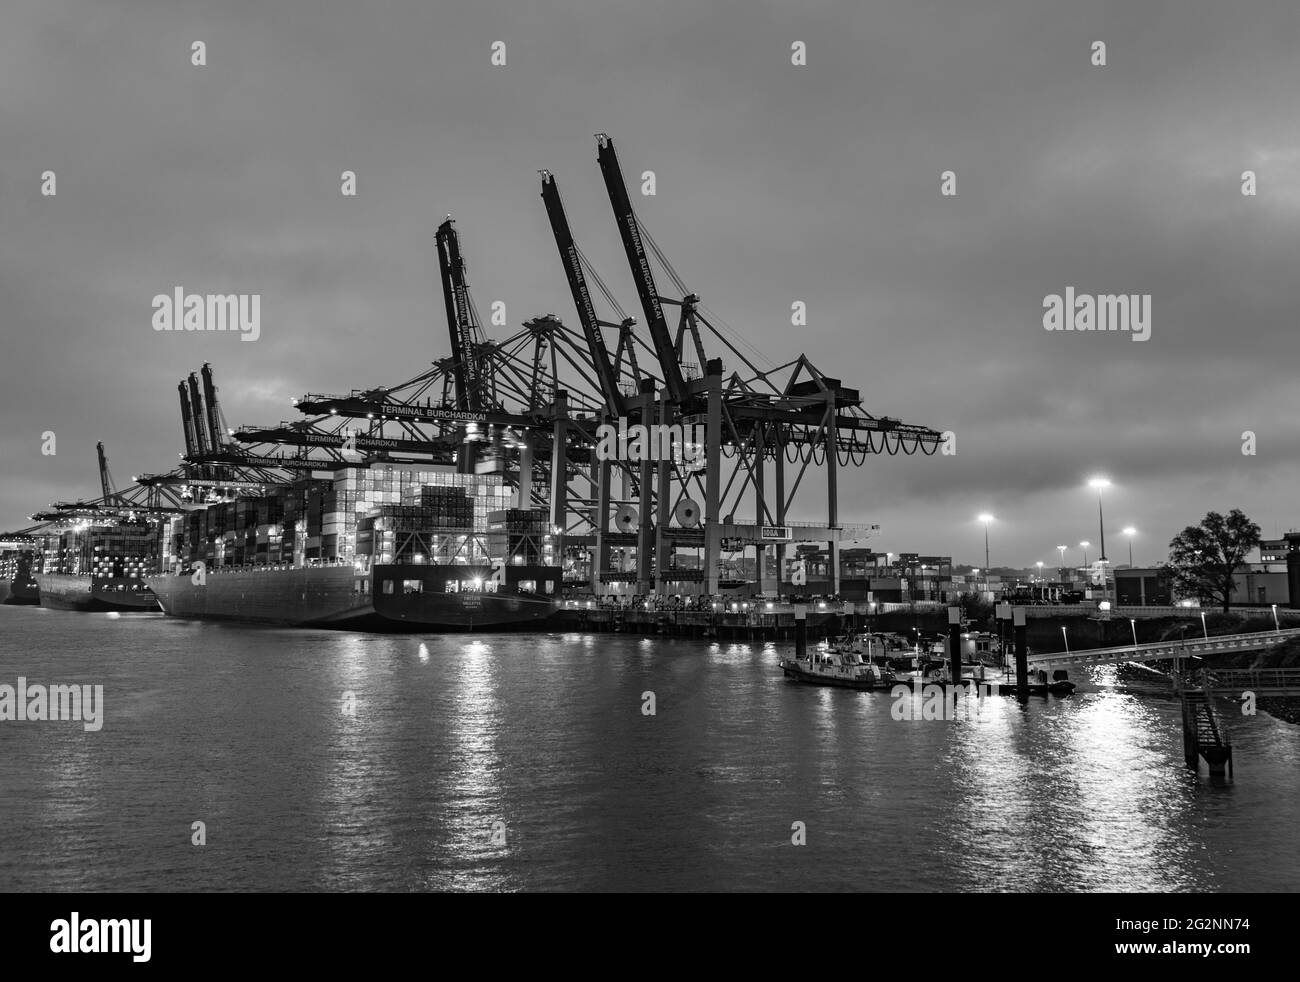 Hamburger Hafen mit seinen riesigen Containerterminals bei Nacht - STADT HAMBURG, DEUTSCHLAND - 10. MAI 2021 Stockfoto